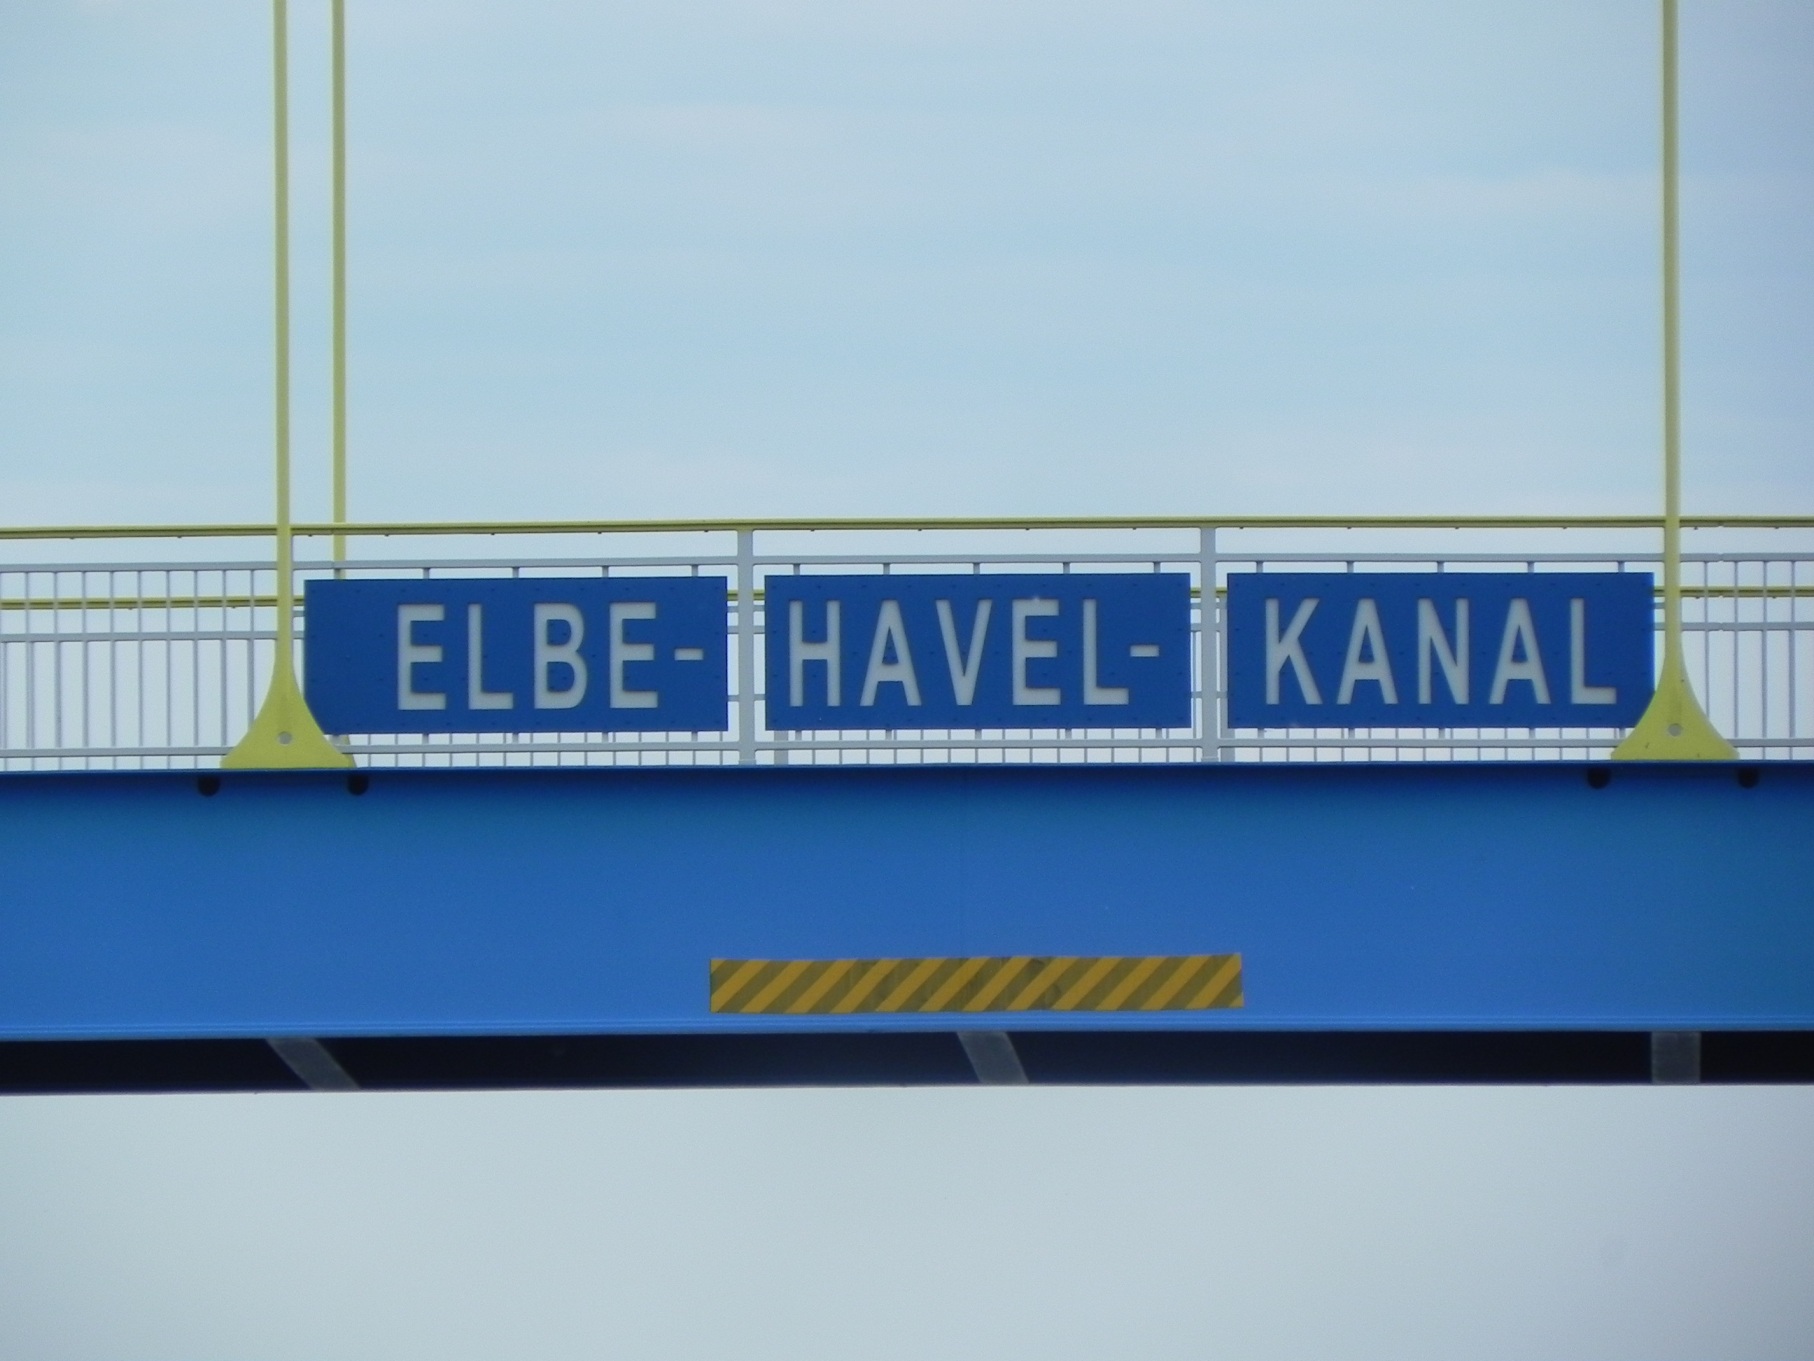 20150602015 Beginn Elbe Hafel Kanal Kopie